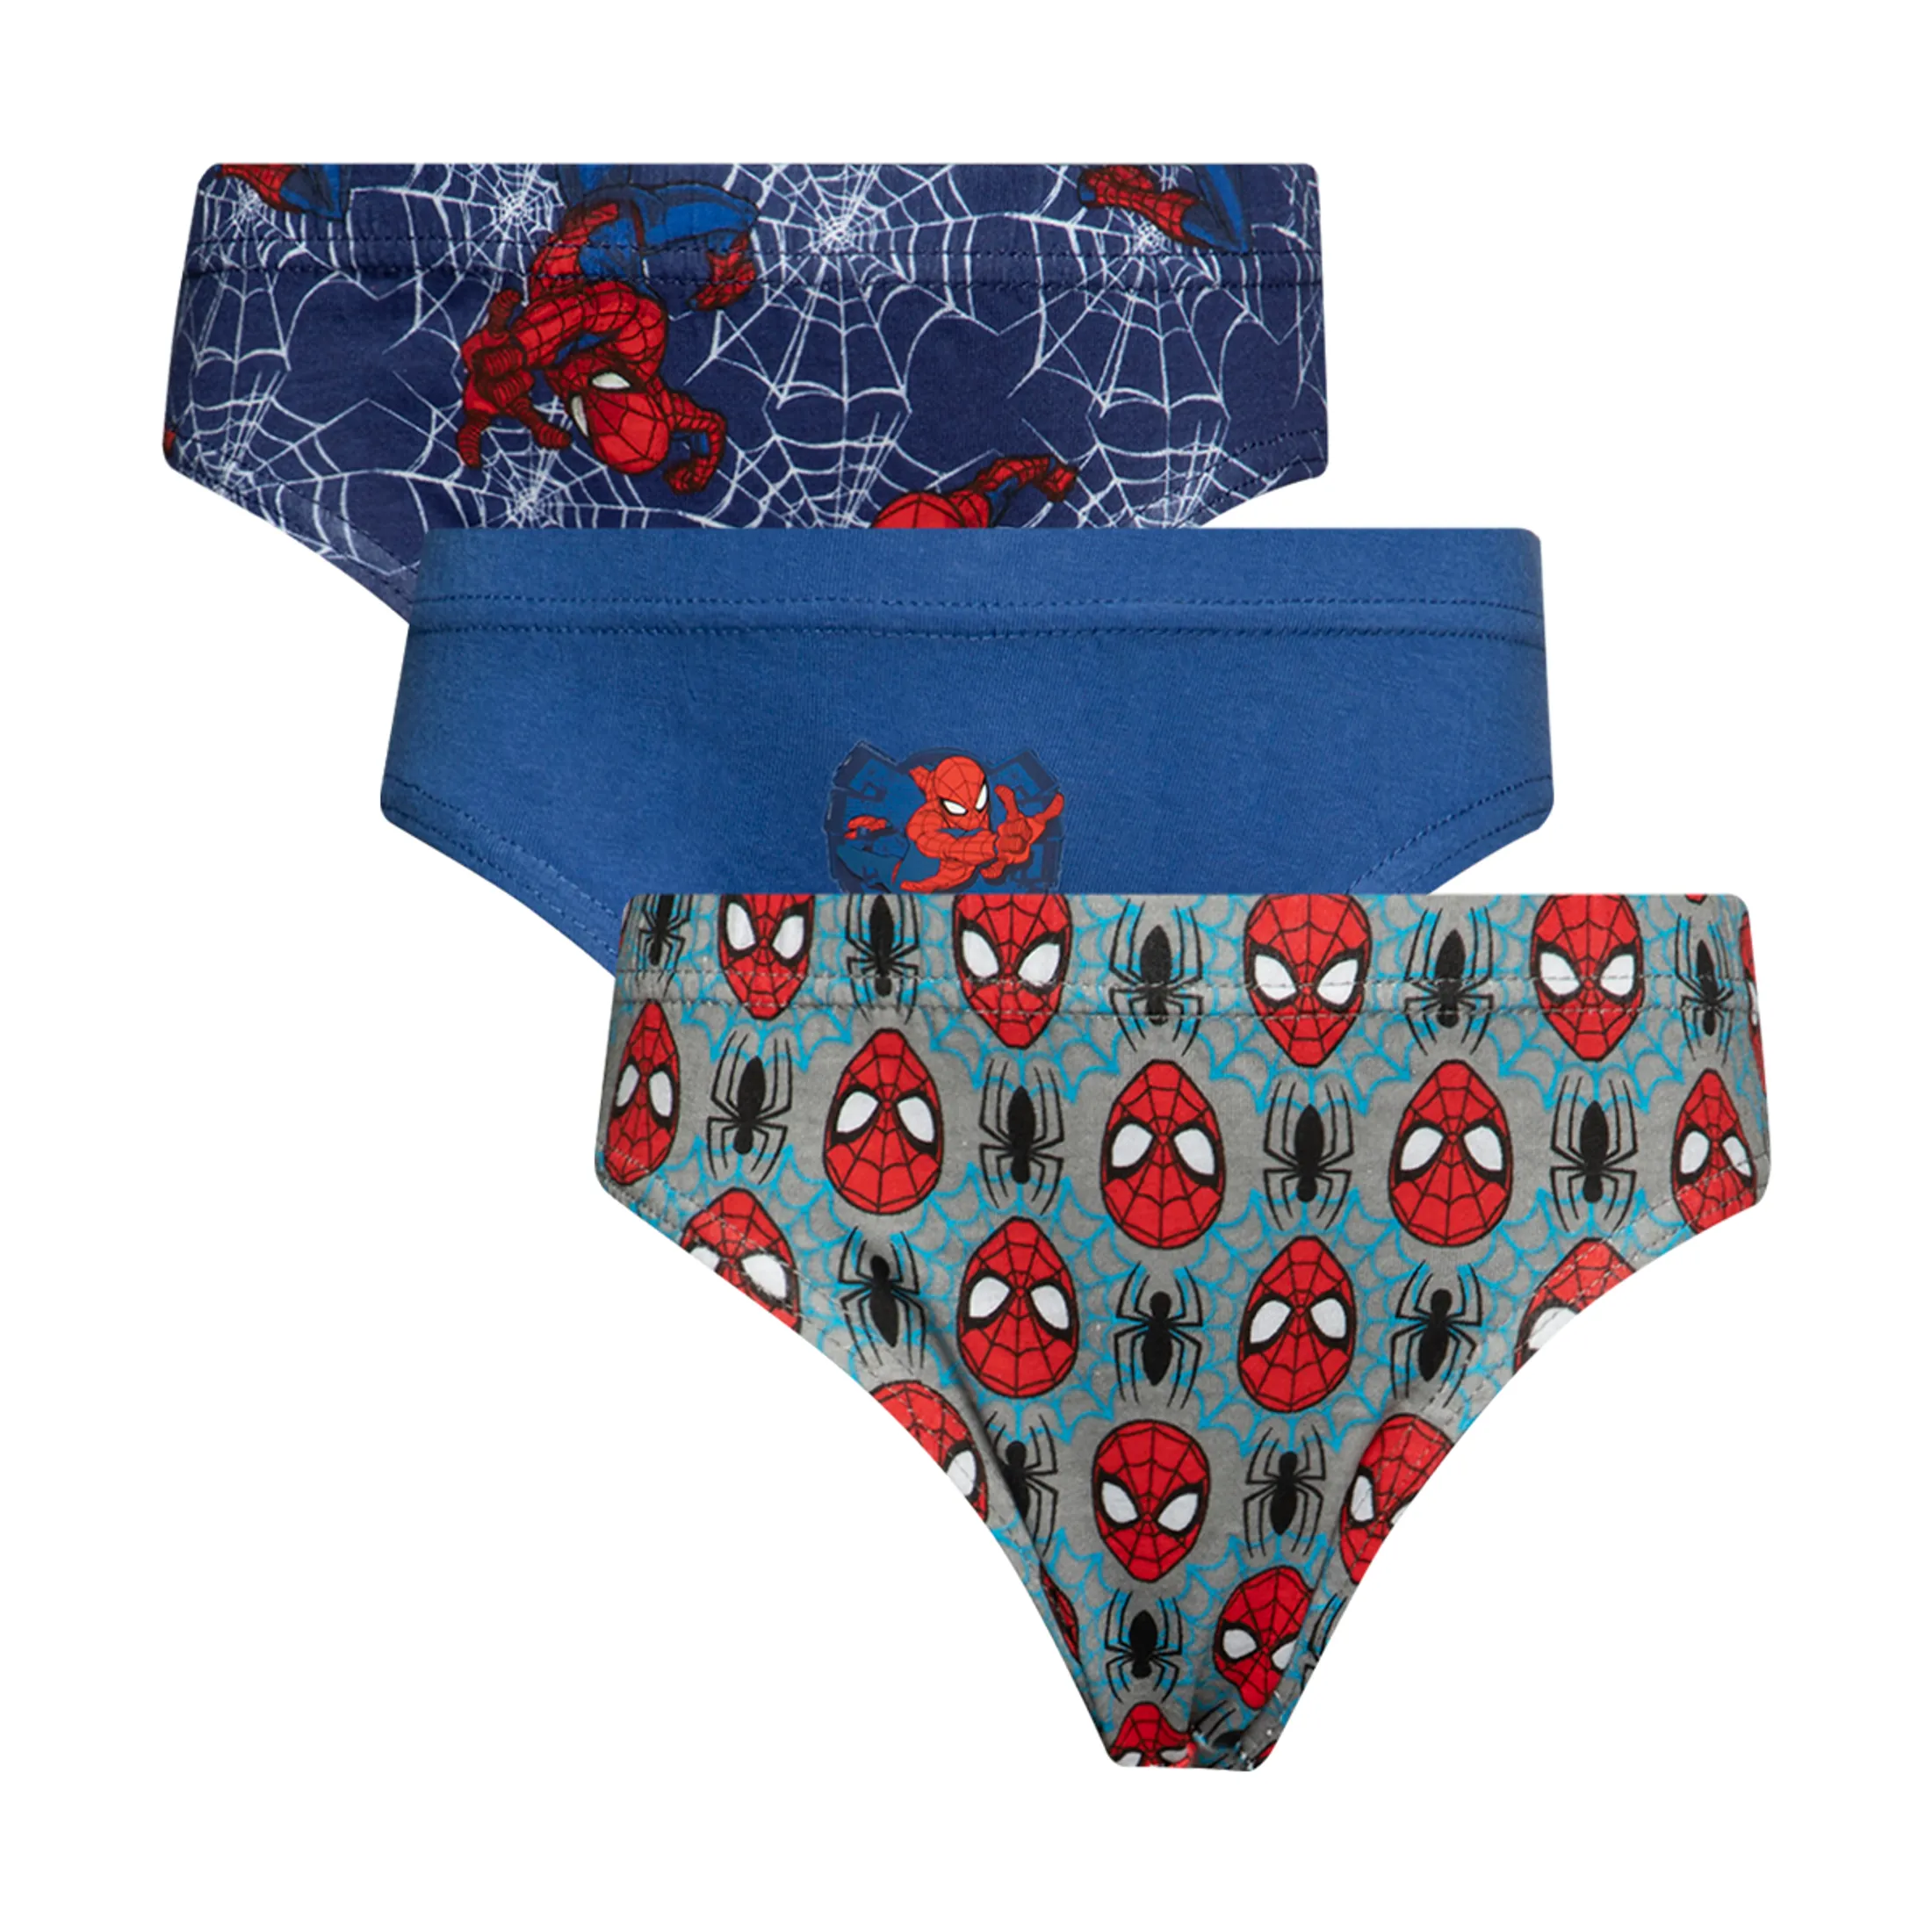 Spider-Man 3 pack mini briefs multi - BOYS 2-8 YEARS Underwear